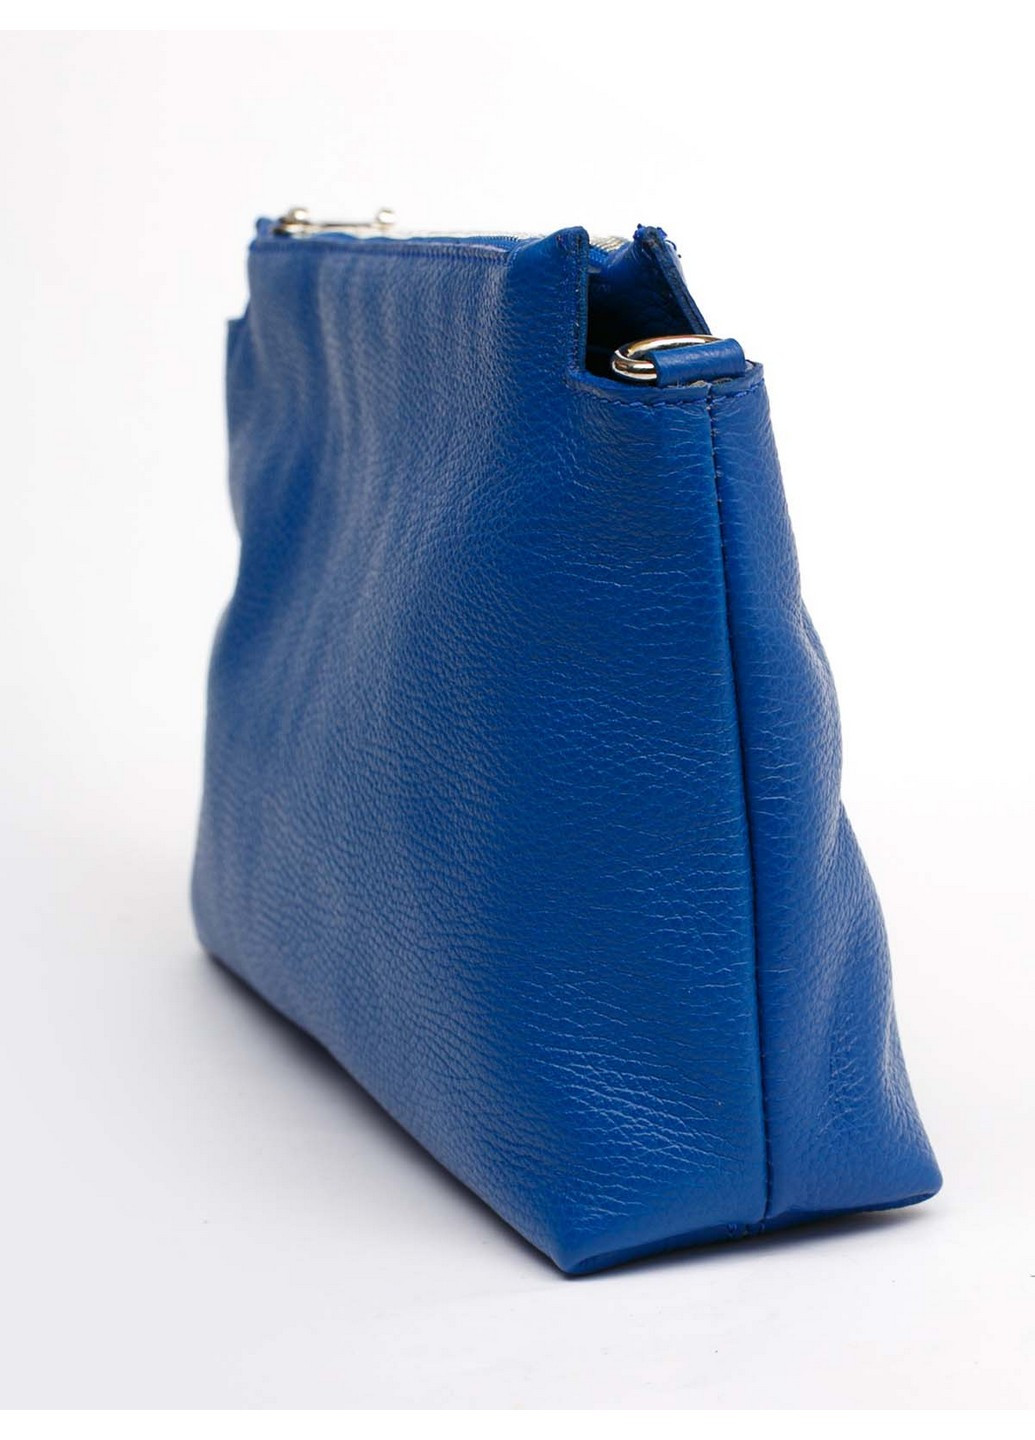 Сумка Italian Bags синя ділова